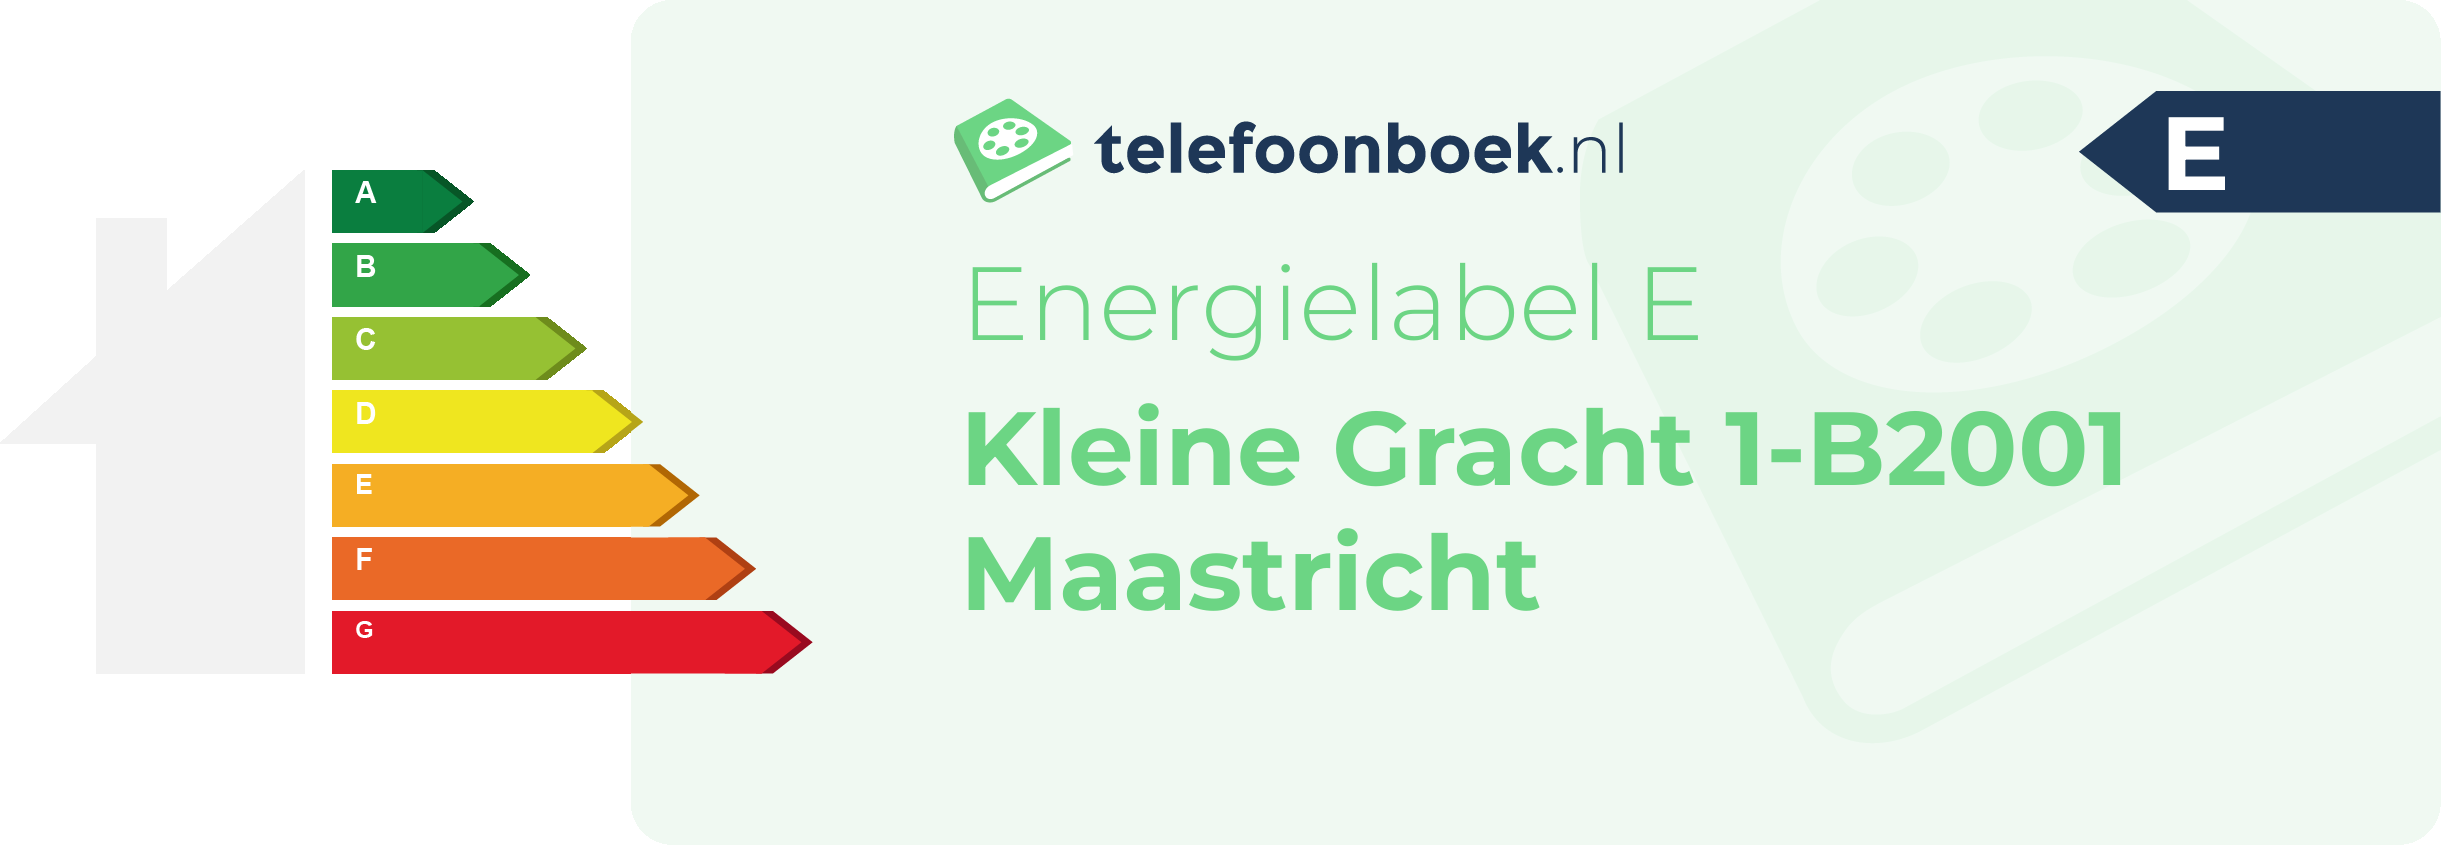 Energielabel Kleine Gracht 1-B2001 Maastricht